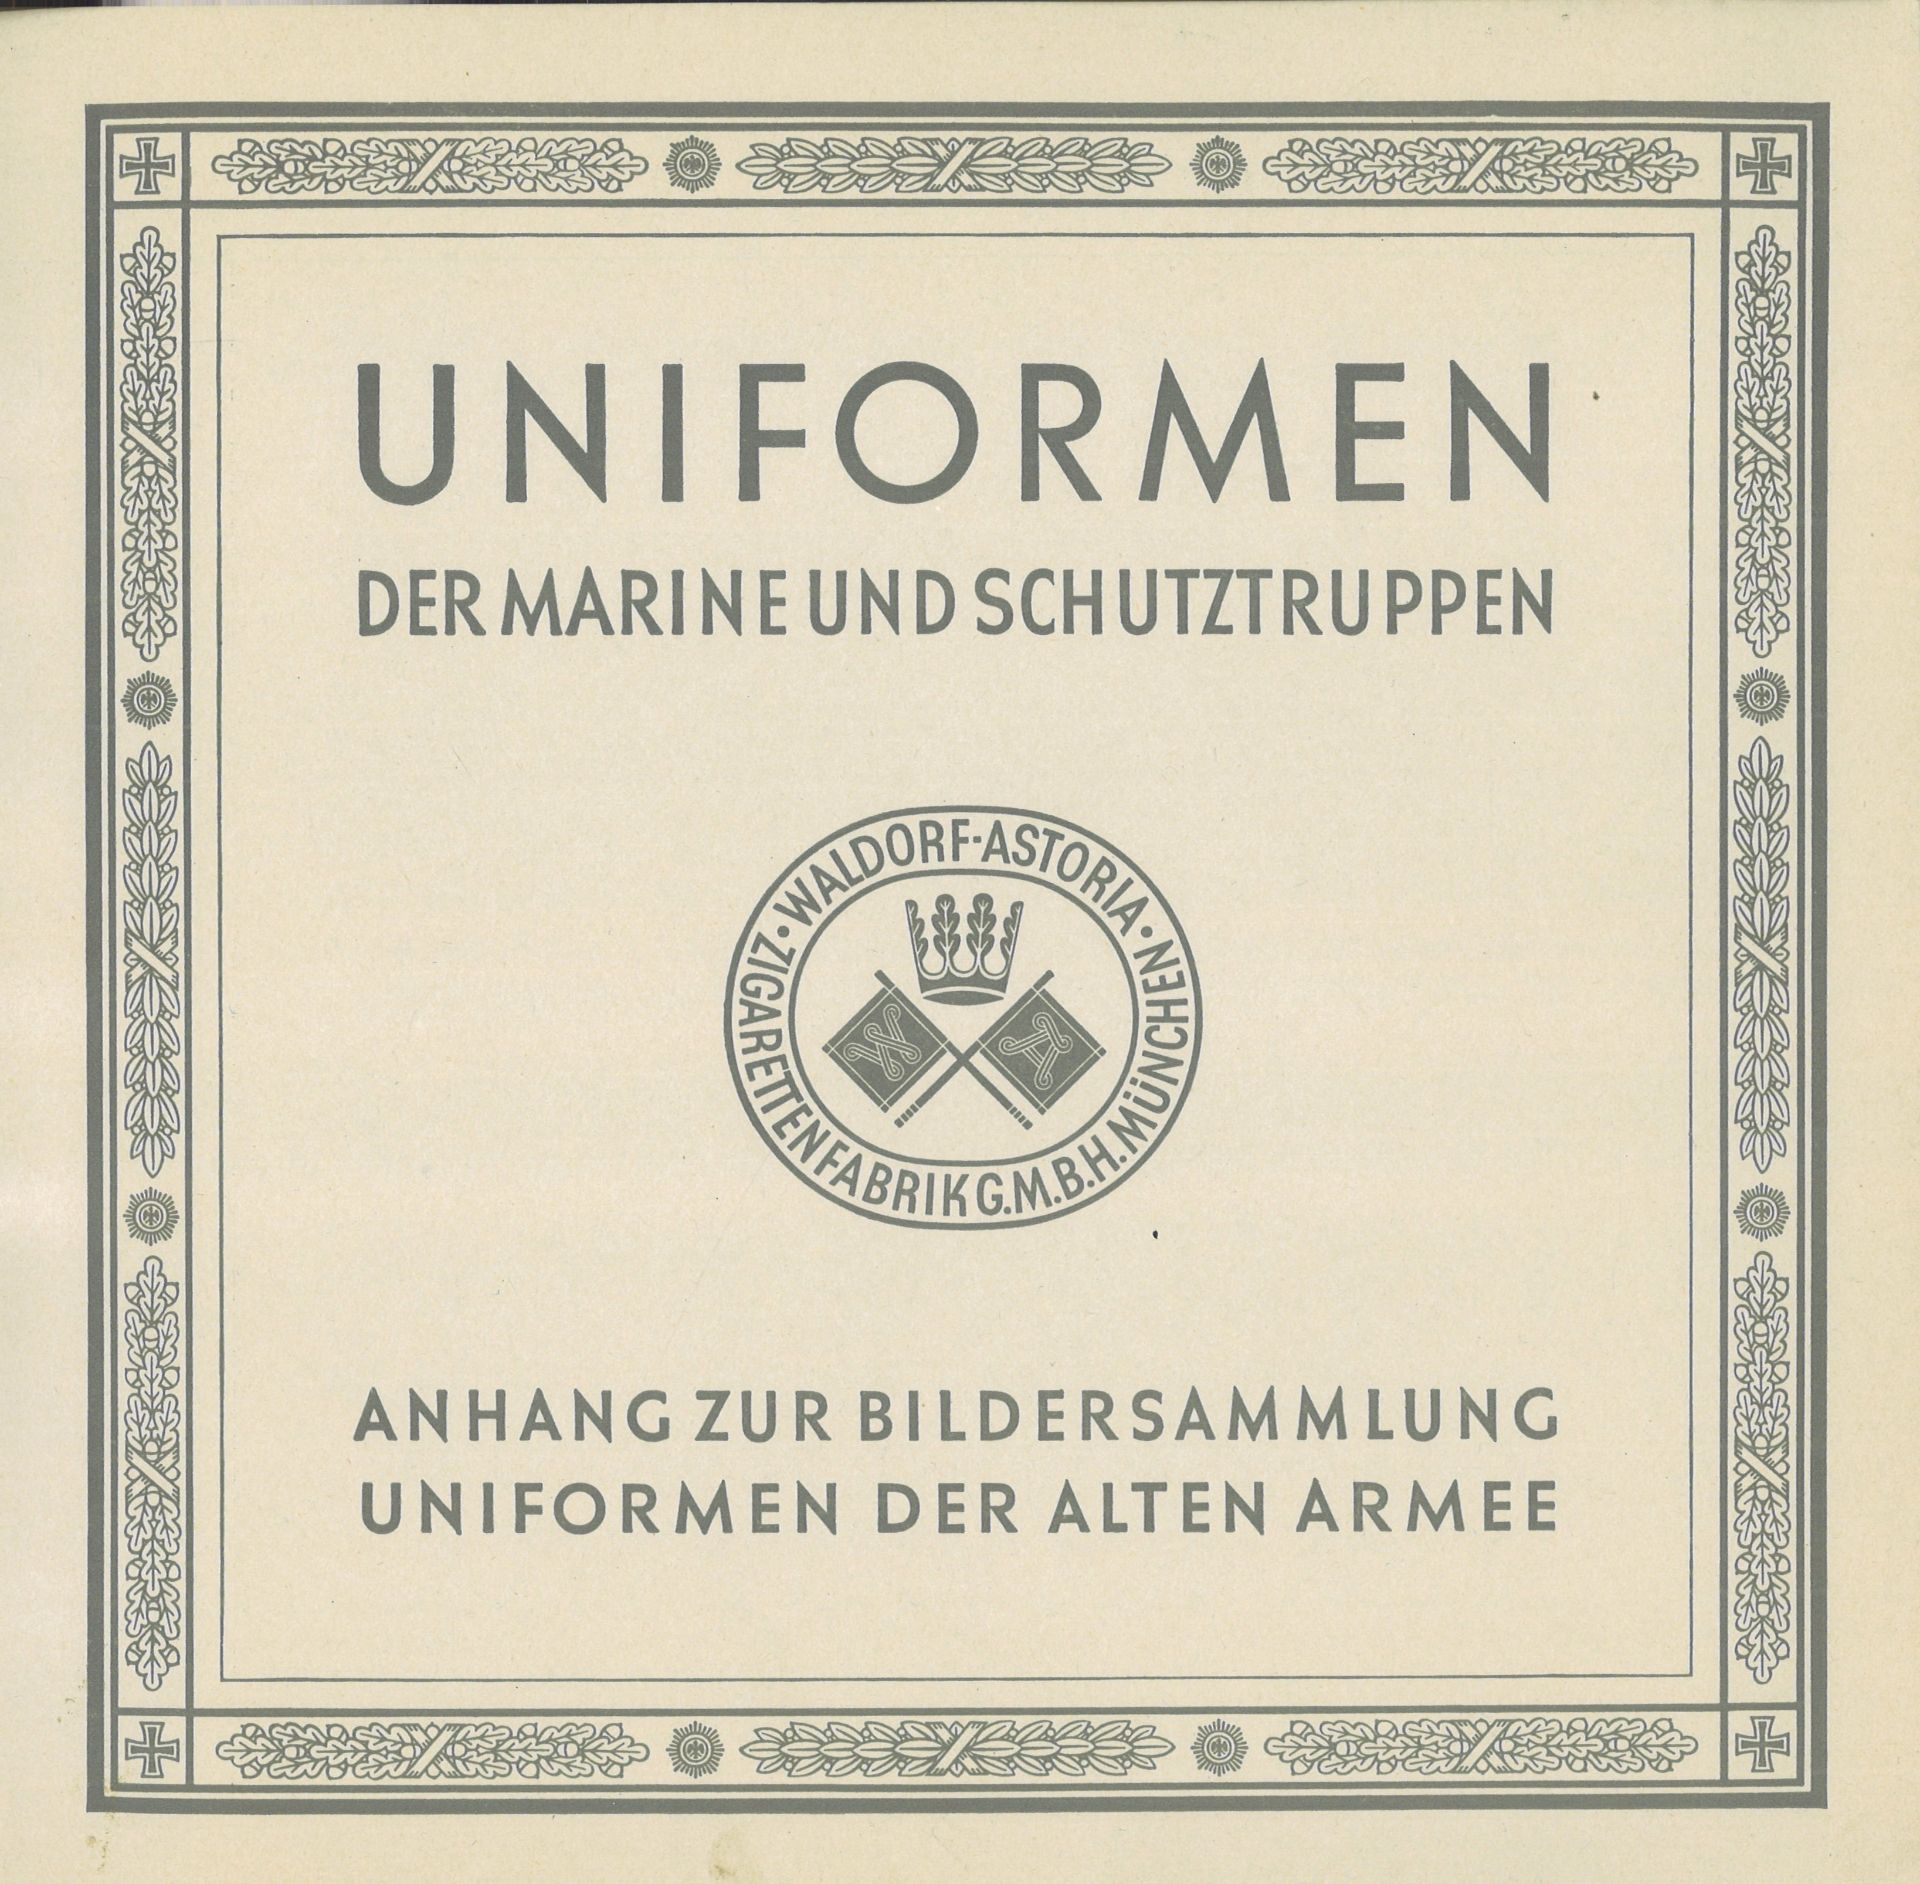 Sammelbilderalbum "Uniformen der Marine und Schutztruppen", Zigarettenfabrik, Waldorf - Astoria, - Image 2 of 3